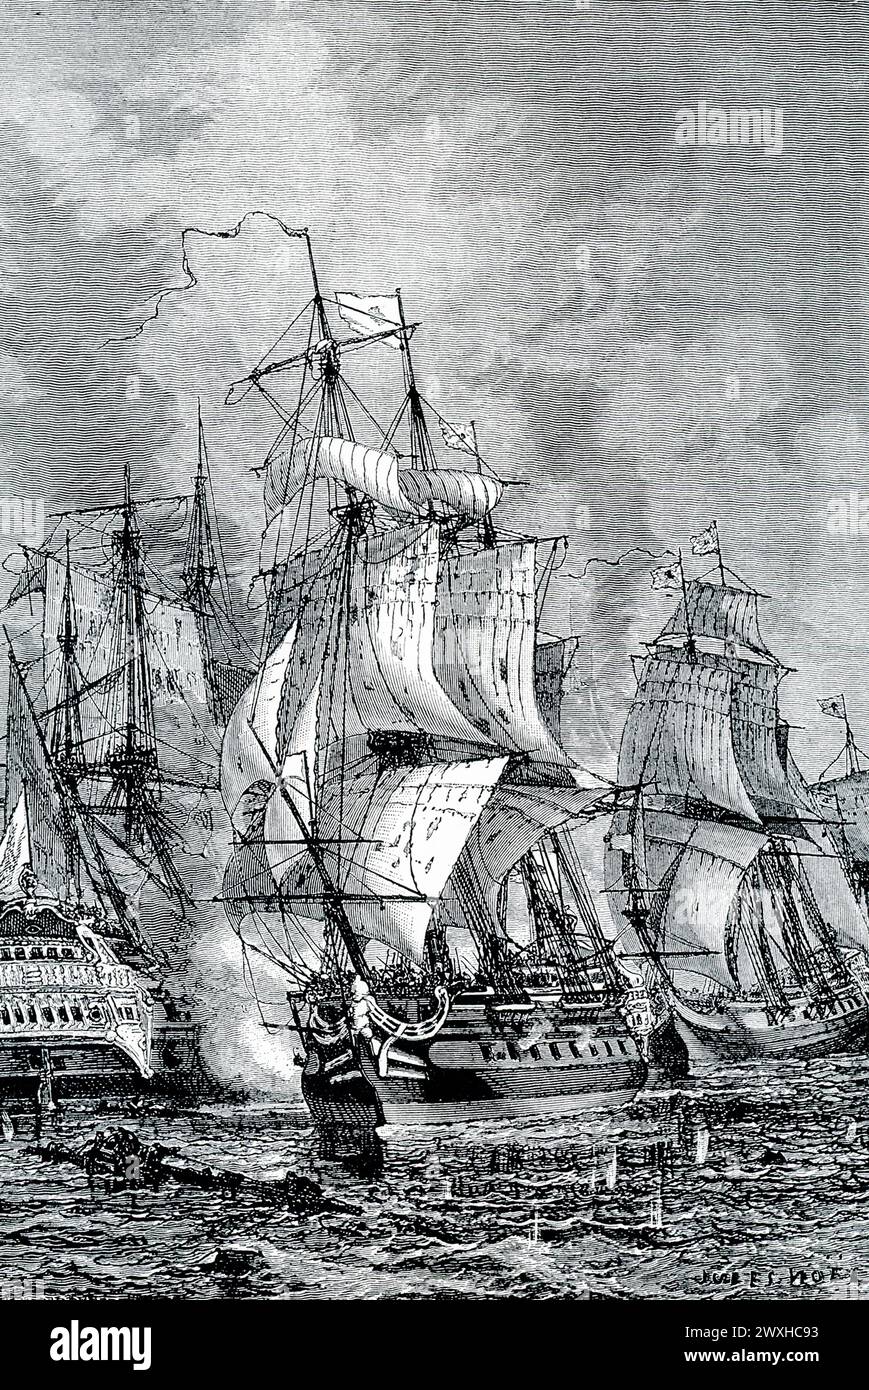 Die Bildunterschrift der frühen 1900er Jahre lautet: „BLAKES MARINESIEG ÜBER VAN TROMP, 1653. – Während Cromwells Zeit hatten die Holländer und Engländer ihren epischen Kampf um die Beherrschung der Meere. Die Hollanders besiegten den berühmten englischen Admiral Blake, und man sagt, dass Van Tromp einen Besen an den Masthead hob, als Zeichen, dass er die Engländer aus dem Meer gefegt hatte. Aber Blake hatte seine Rache, indem er Van Tromps Flotte vor Portsmouth besiegte und bald darauf die Engländer ihre alten Rivalen völlig überbegeistert hatten.“ Beide Seiten gewannen den Sieg in der Schlacht bei Scheveningen. Stockfoto